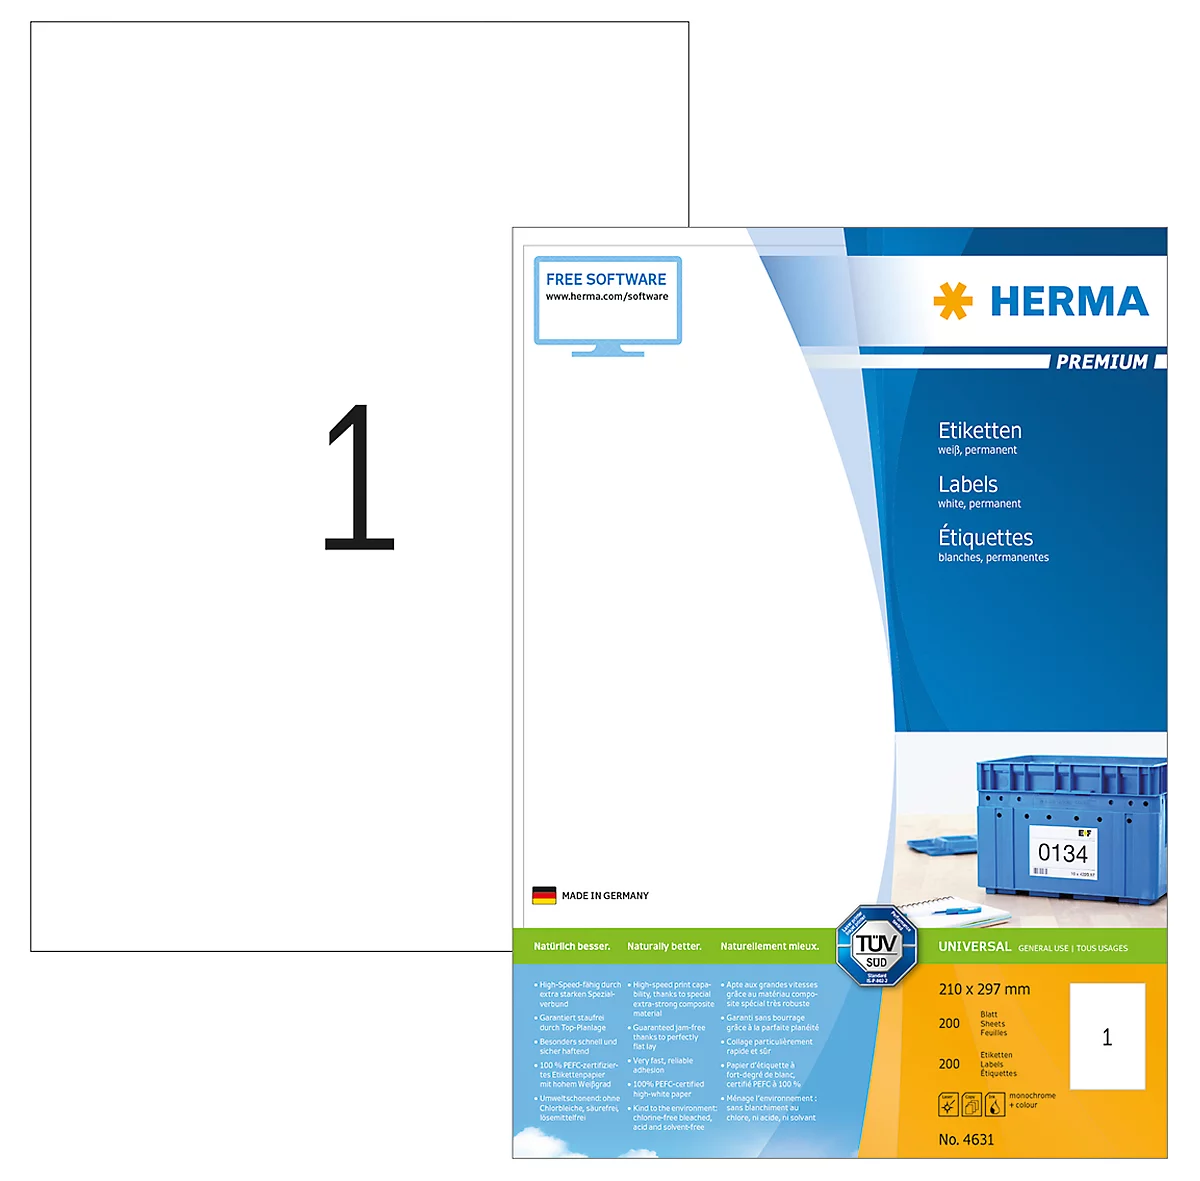 Herma Premium-Etiketten auf DIN A4-Blättern, 200 Etiketten, 200 Bogen